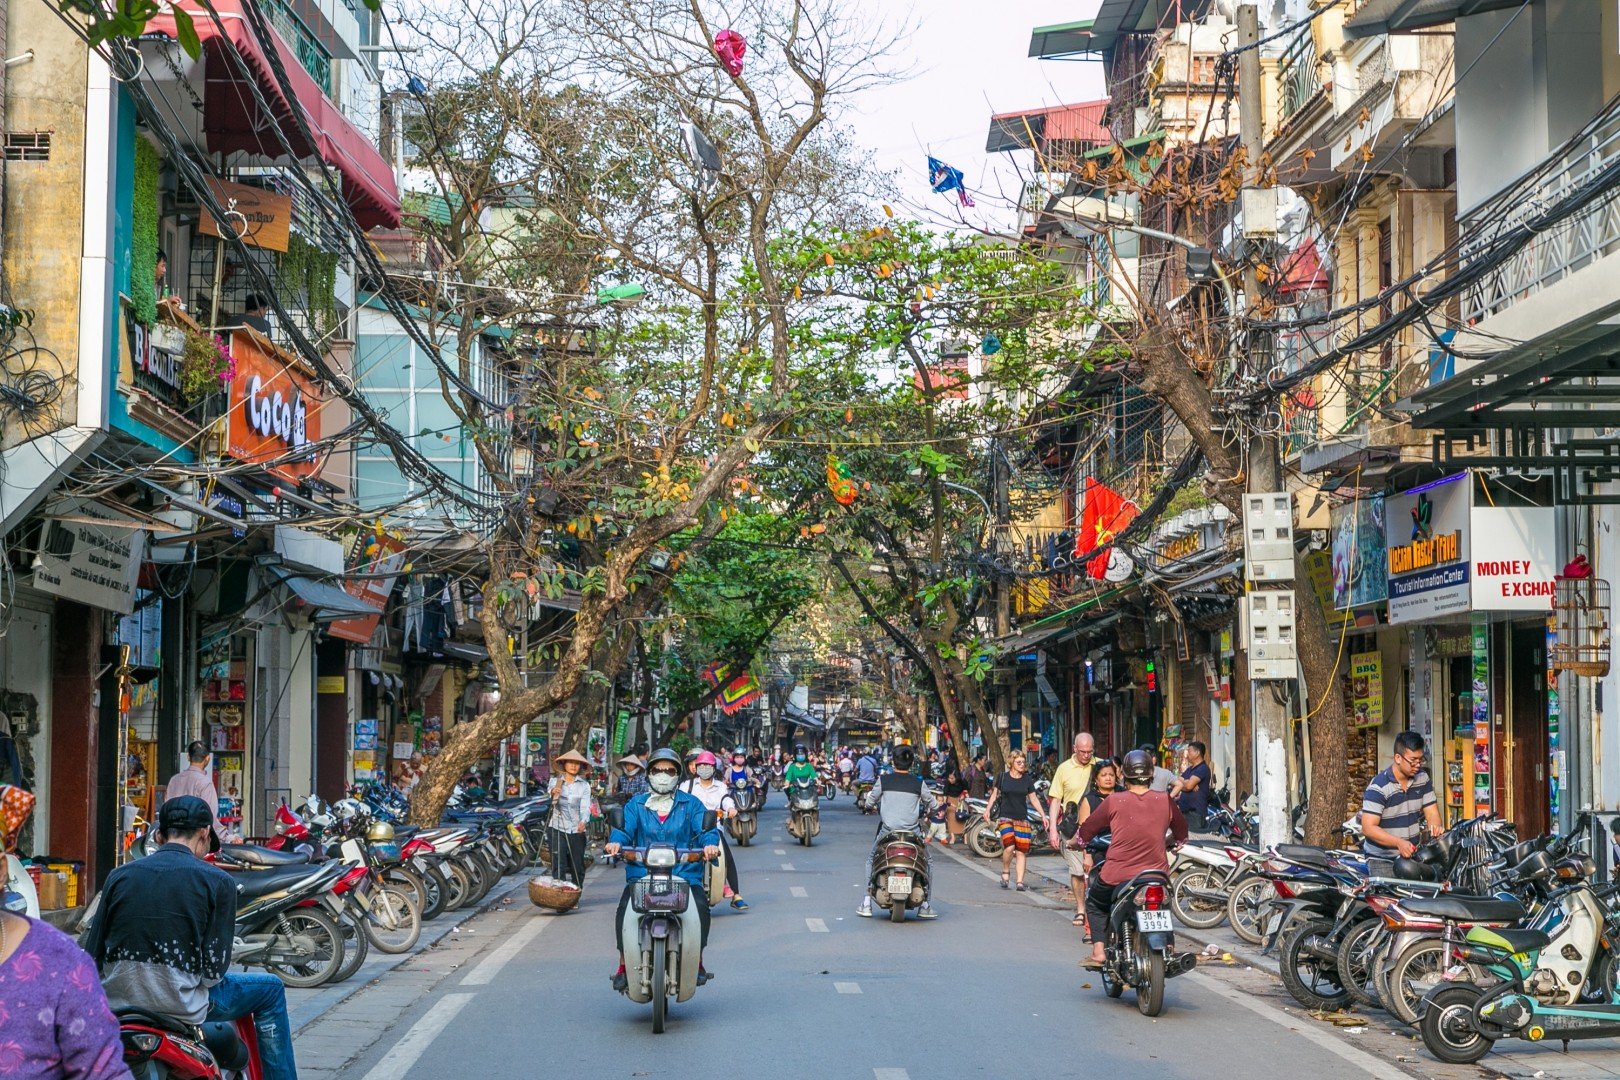 Spending a day in Hanoi